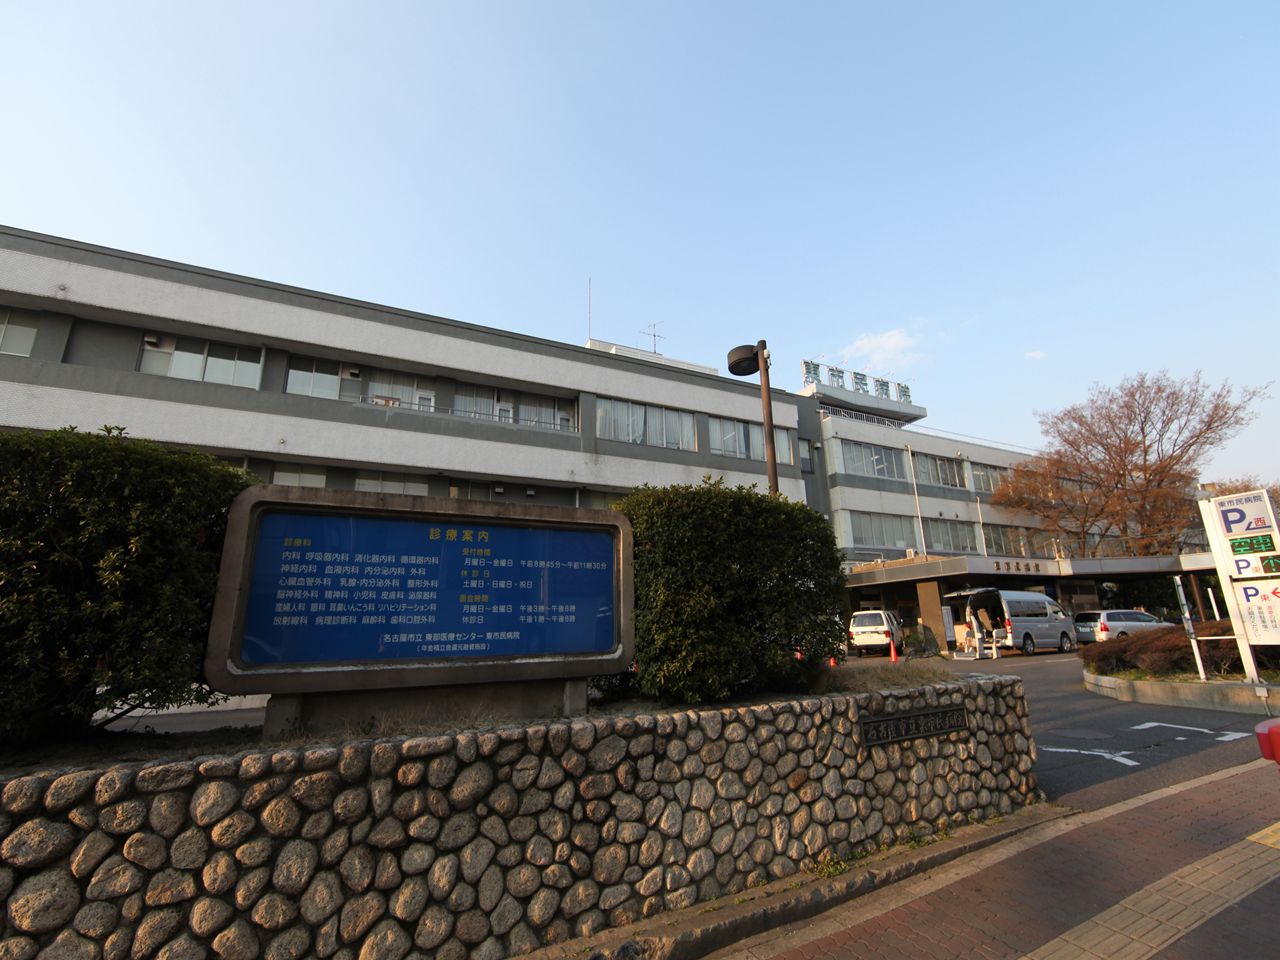 Hospital. 1100m to Nagoya Municipal Eastern Medical Center (General Hospital) (hospital)